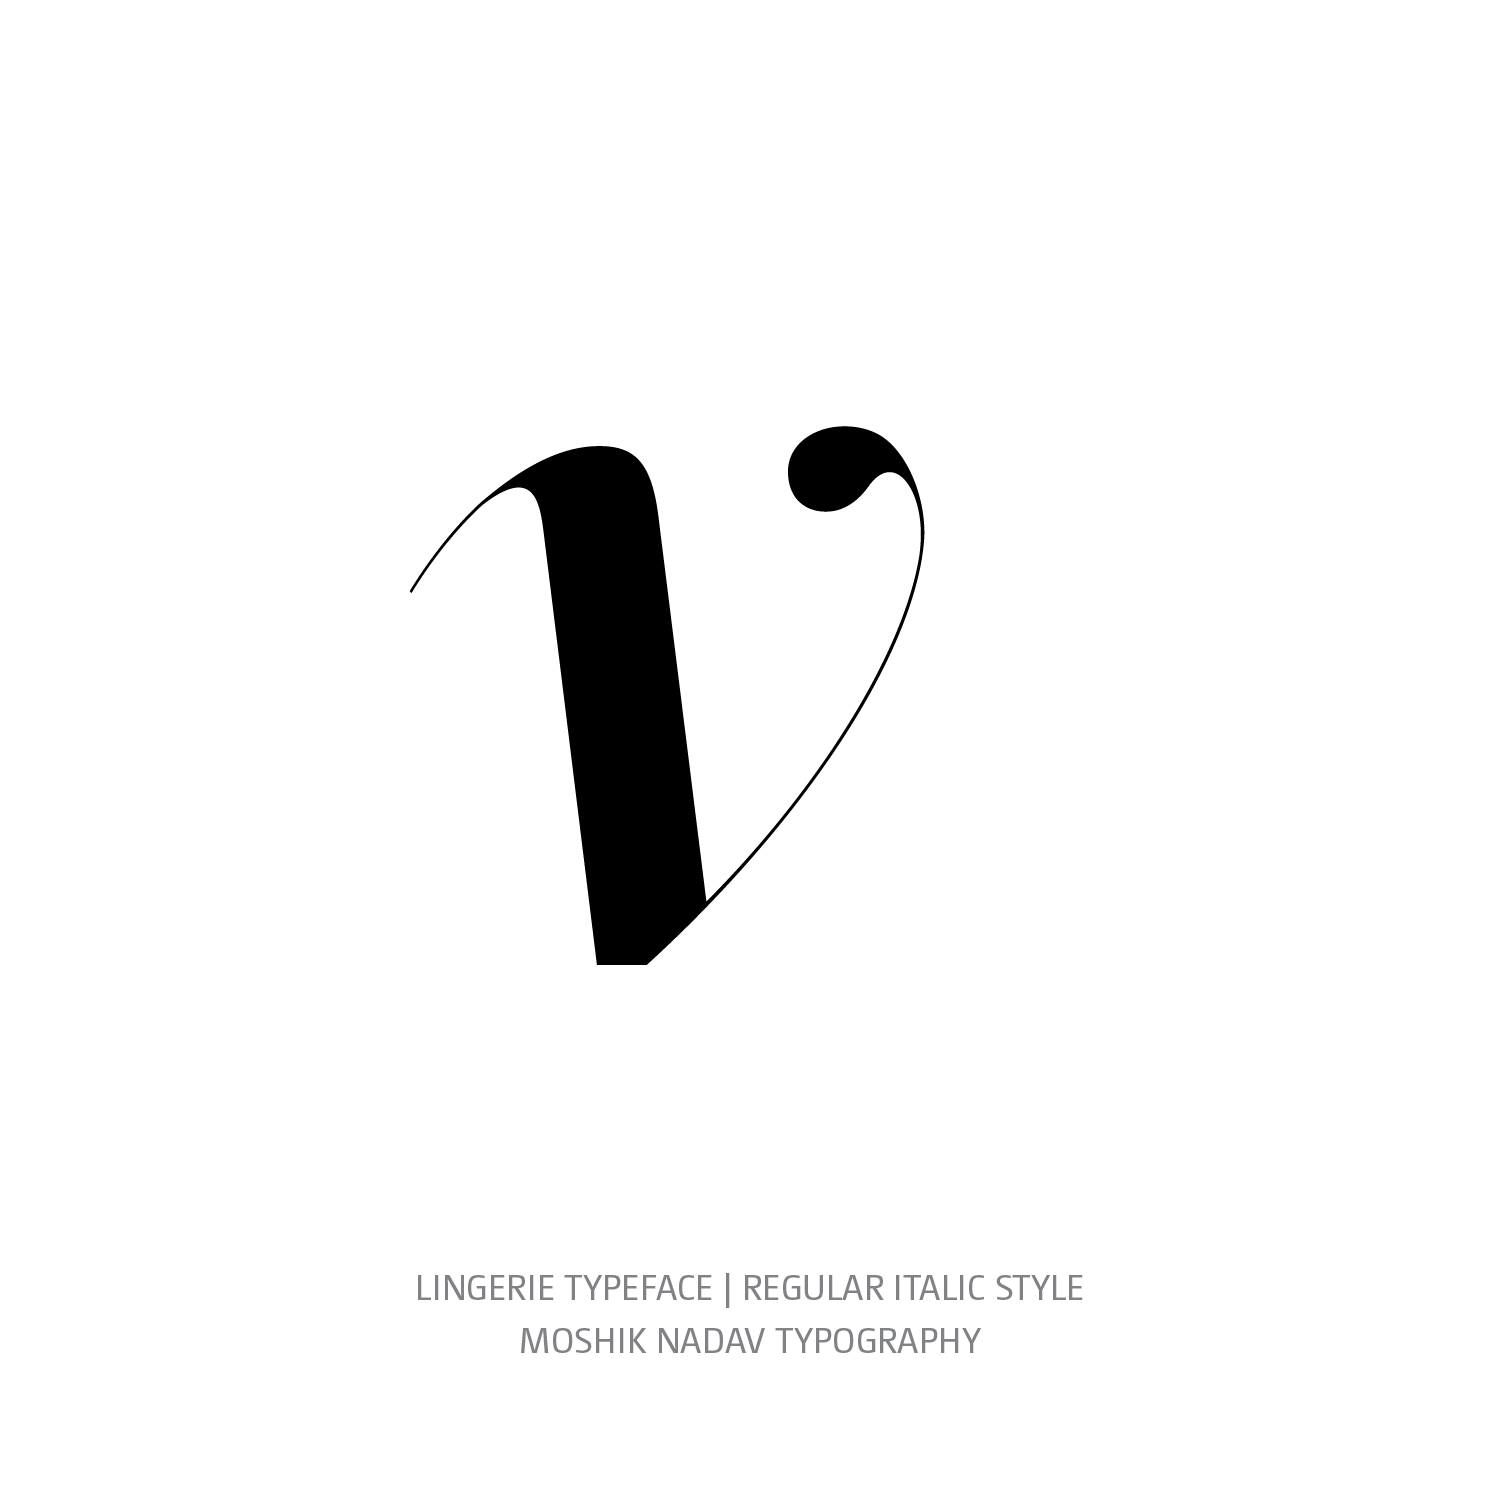 Lingerie Typeface Regular Italic v - Fashion fonts by Moshik Nadav Typography